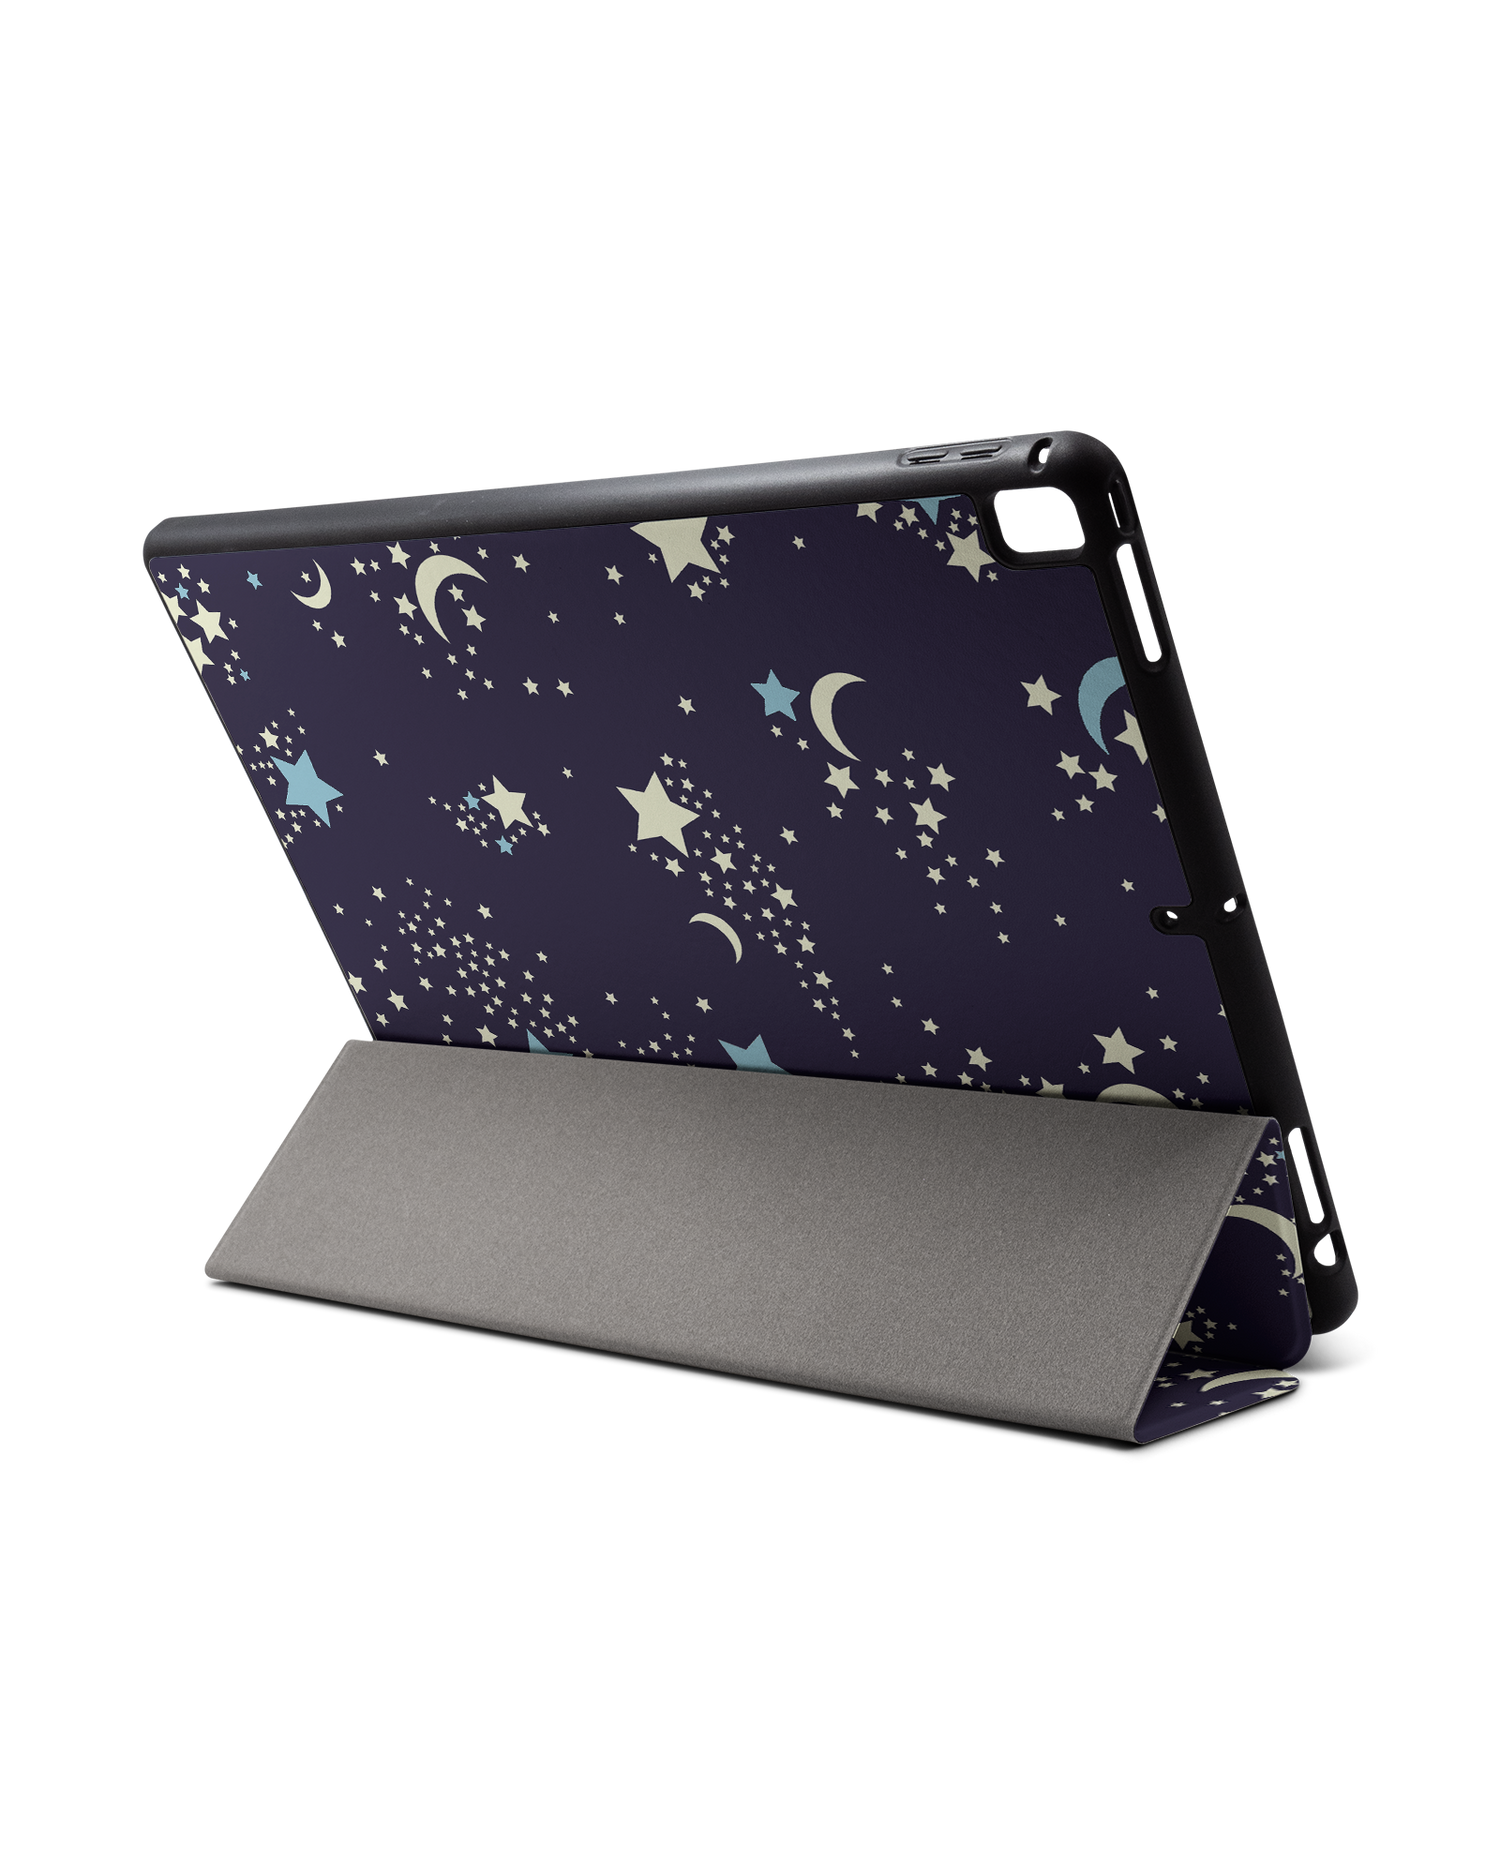 Mystical Pattern iPad Hülle mit Stifthalter für Apple iPad Pro 2 12.9'' (2017): Aufgestellt im Querformat von hinten